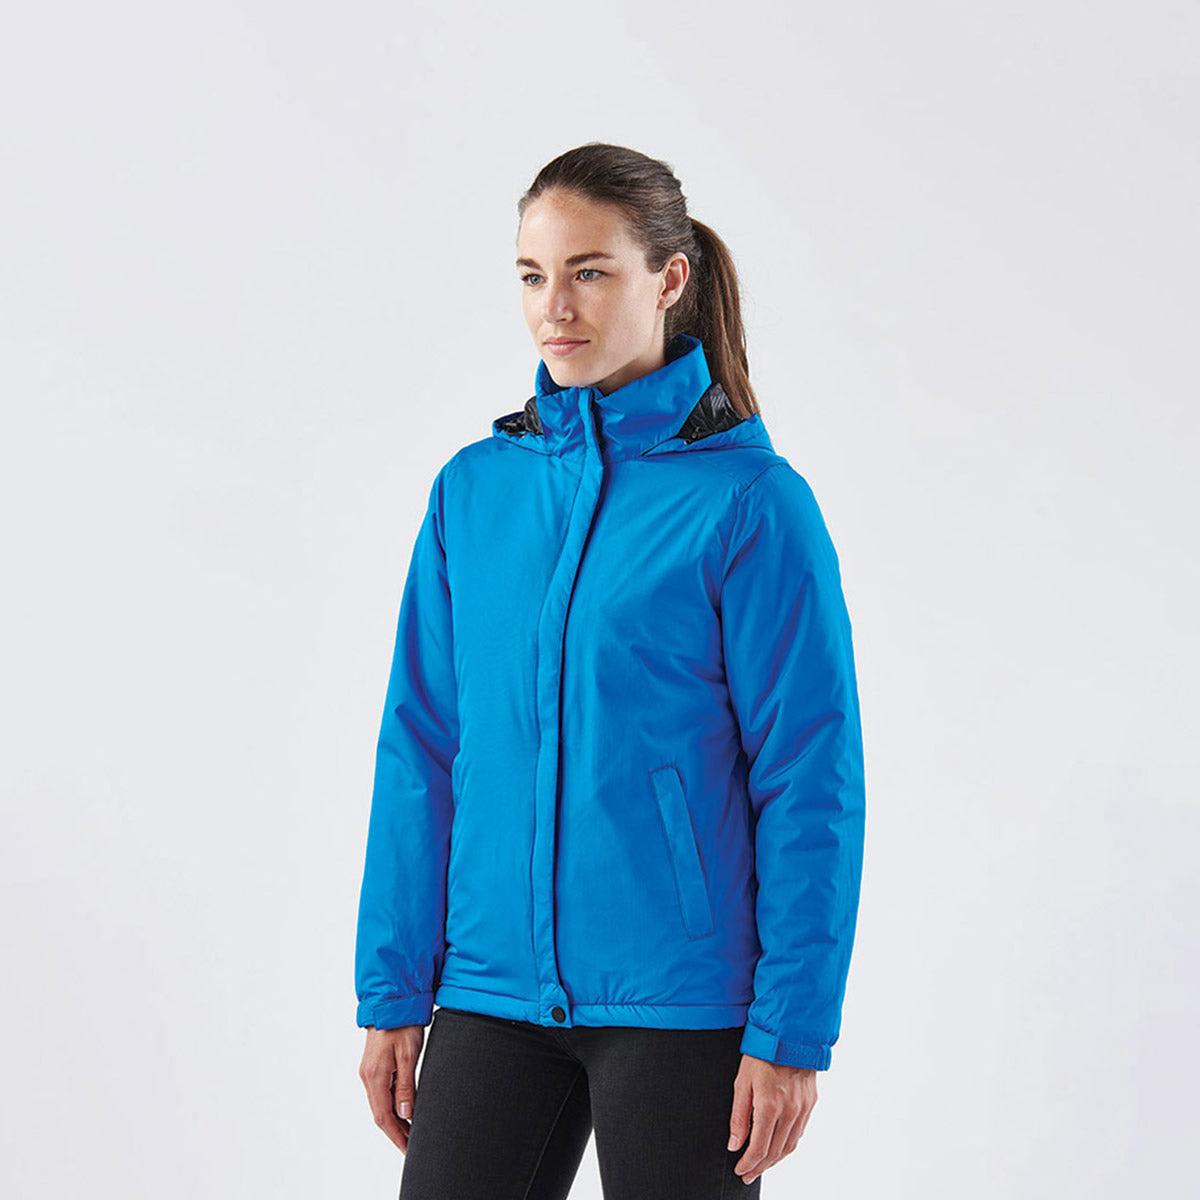 Women's Nautilus 3-in-1 Jacket - Stormtech USA Retail